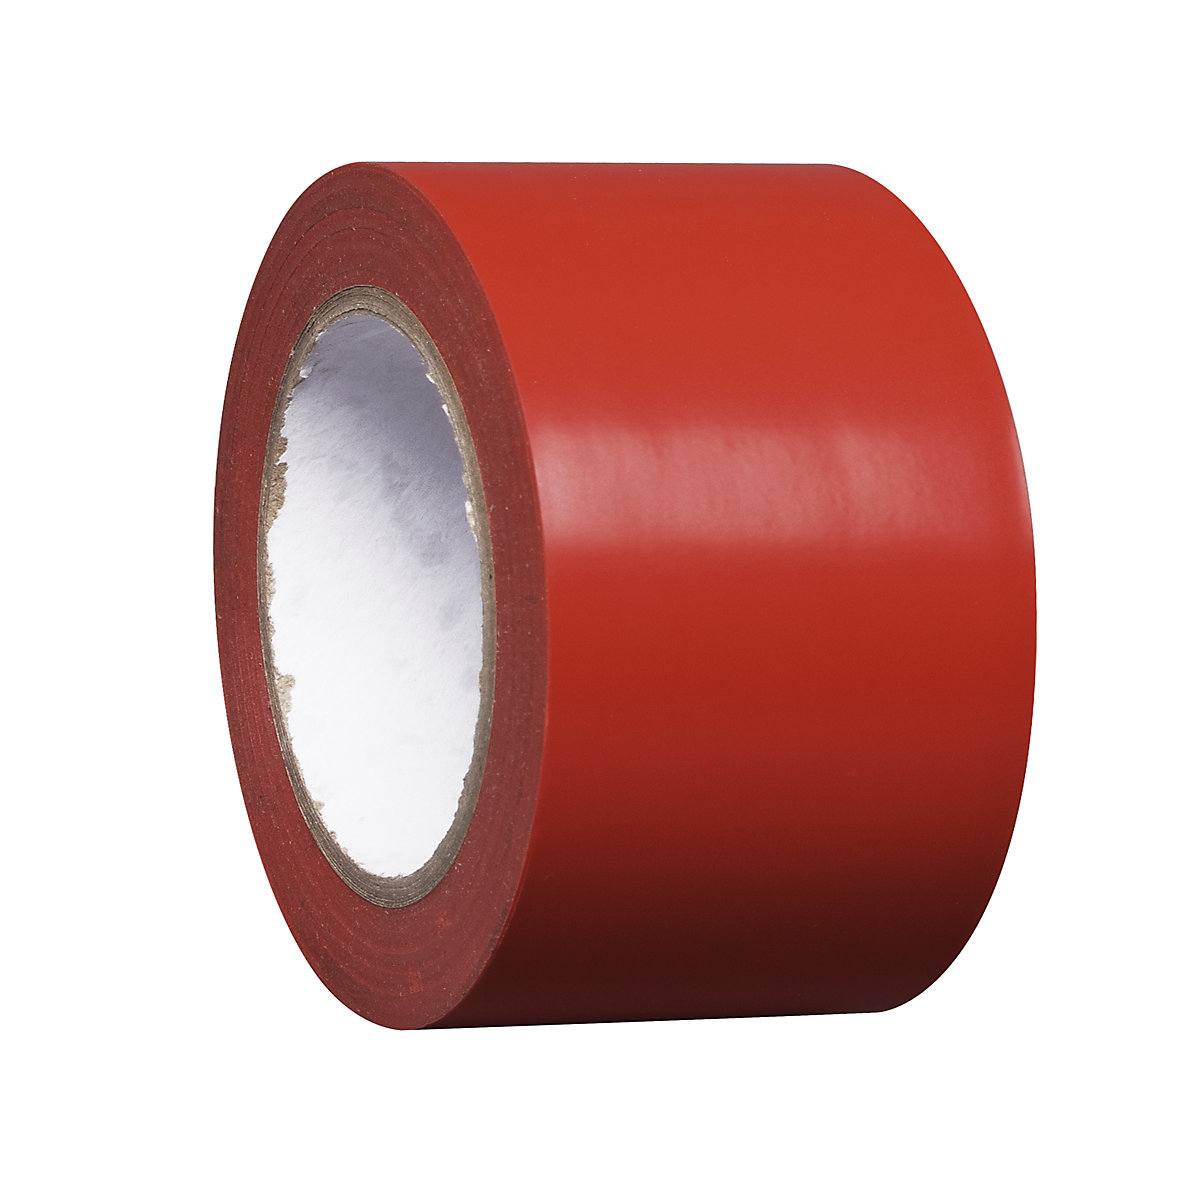 Talni označevalni trak iz vinila, enobarven, širina 75 mm, rdeč, DE 8 rol-8